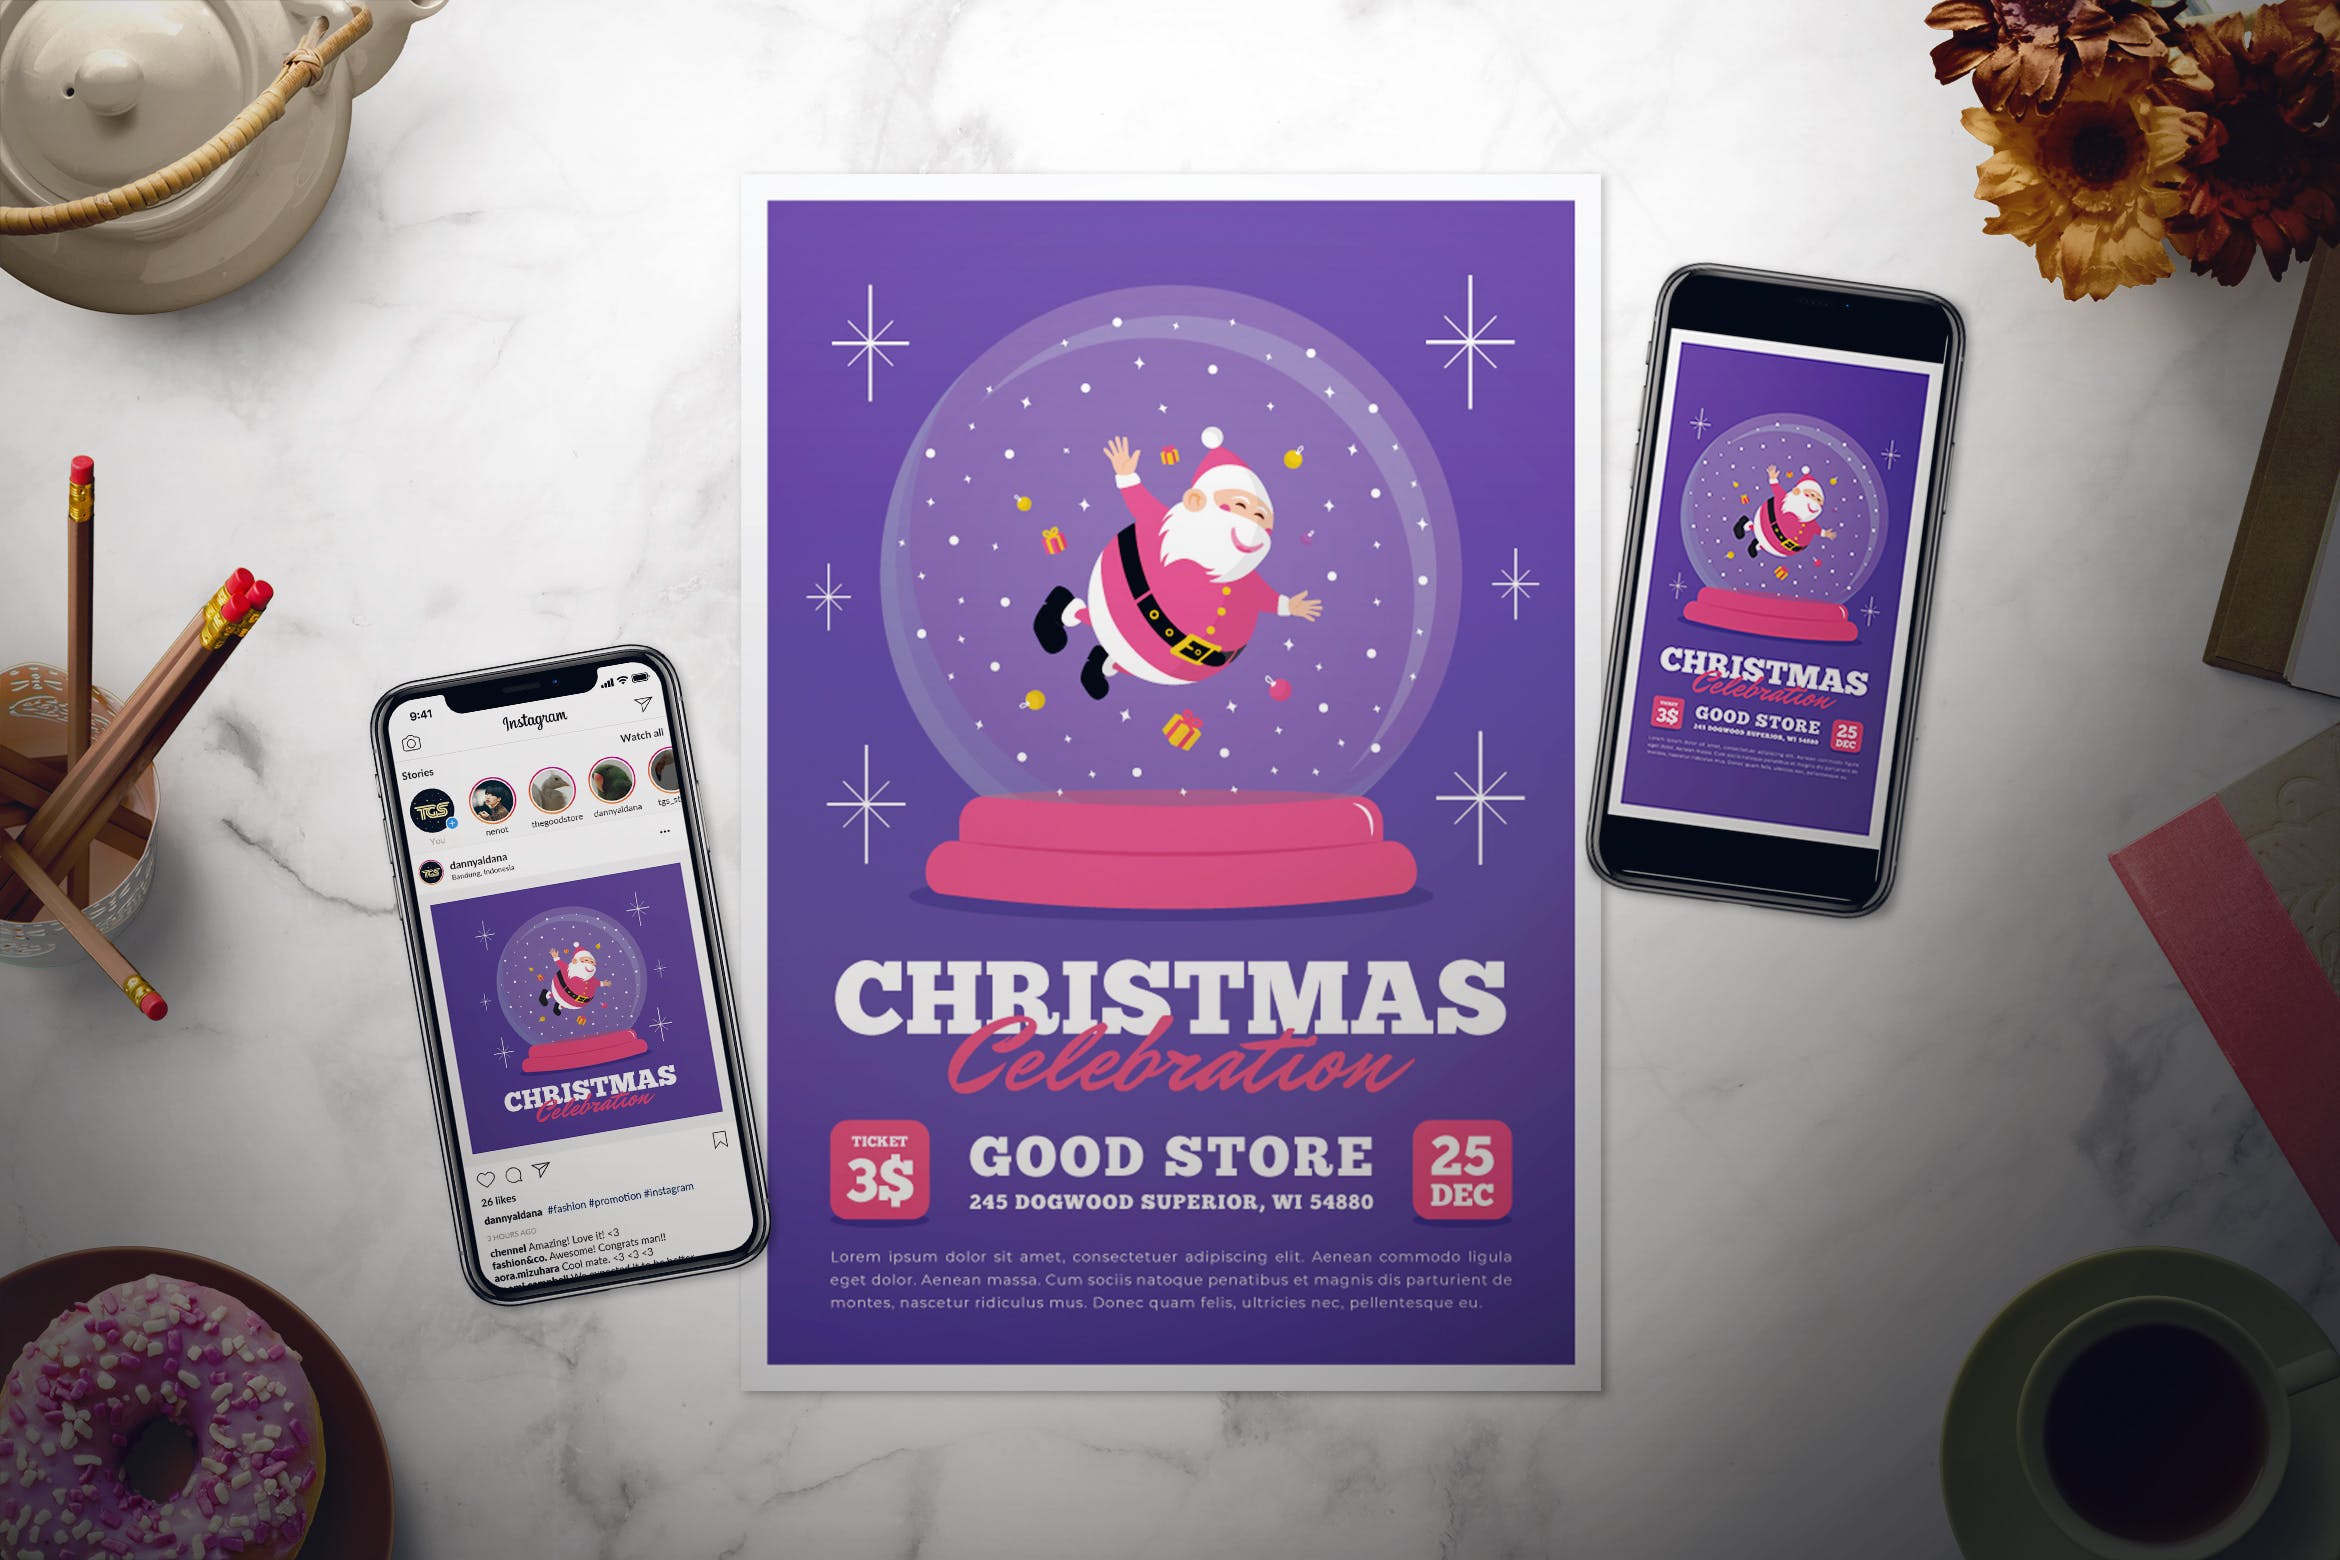 水晶球圣诞节庆祝活动传单设计模板 Christmas Celebration Flyer Set插图